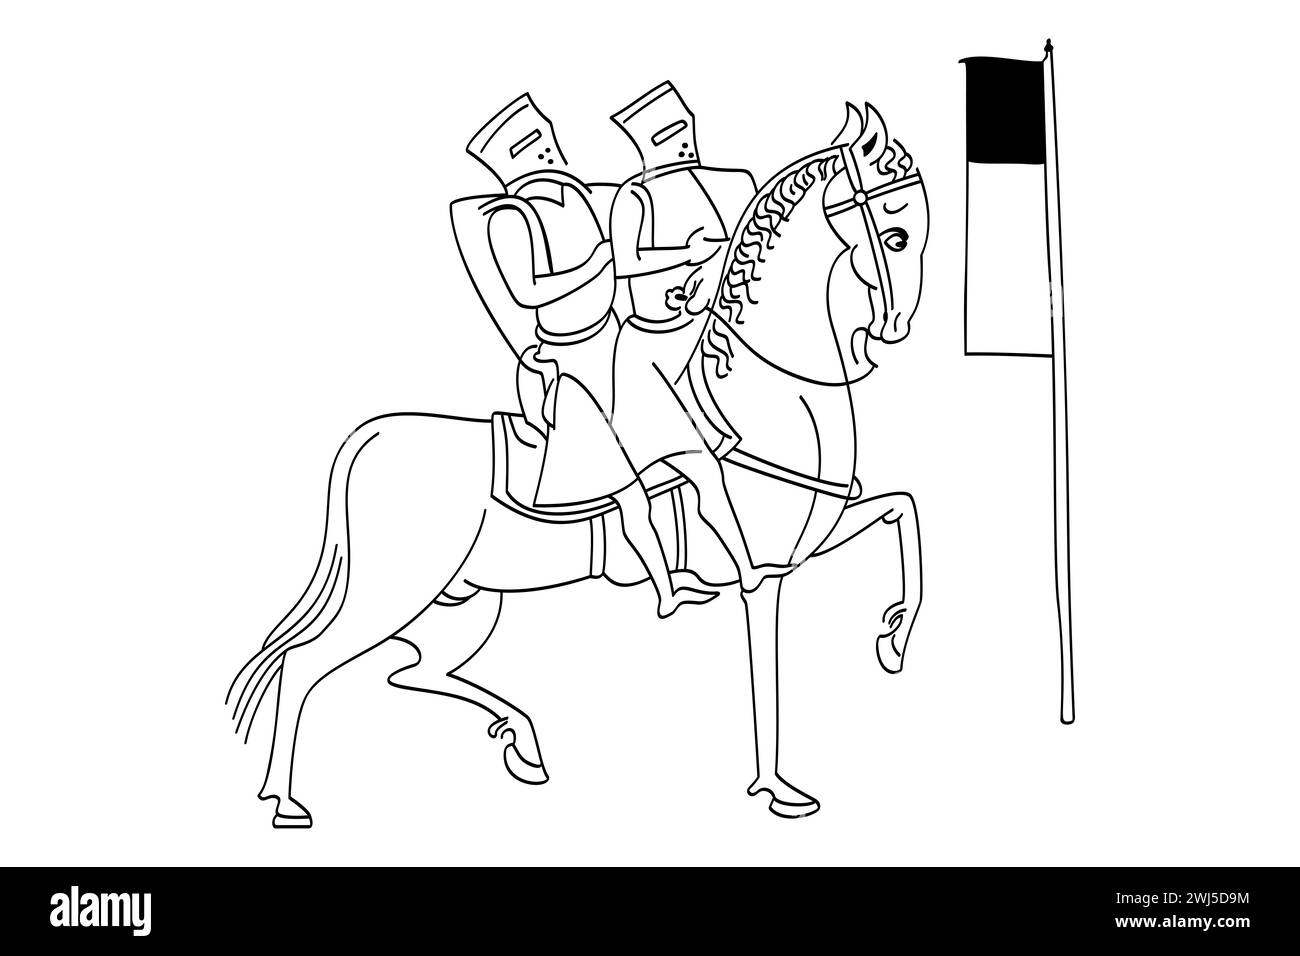 Sceau des Templiers avec la bannière, un symbole montrant deux chevaliers chevauchant un seul cheval. Le sceau des Templiers, tel qu'il est représenté au XIIIe siècle. Banque D'Images